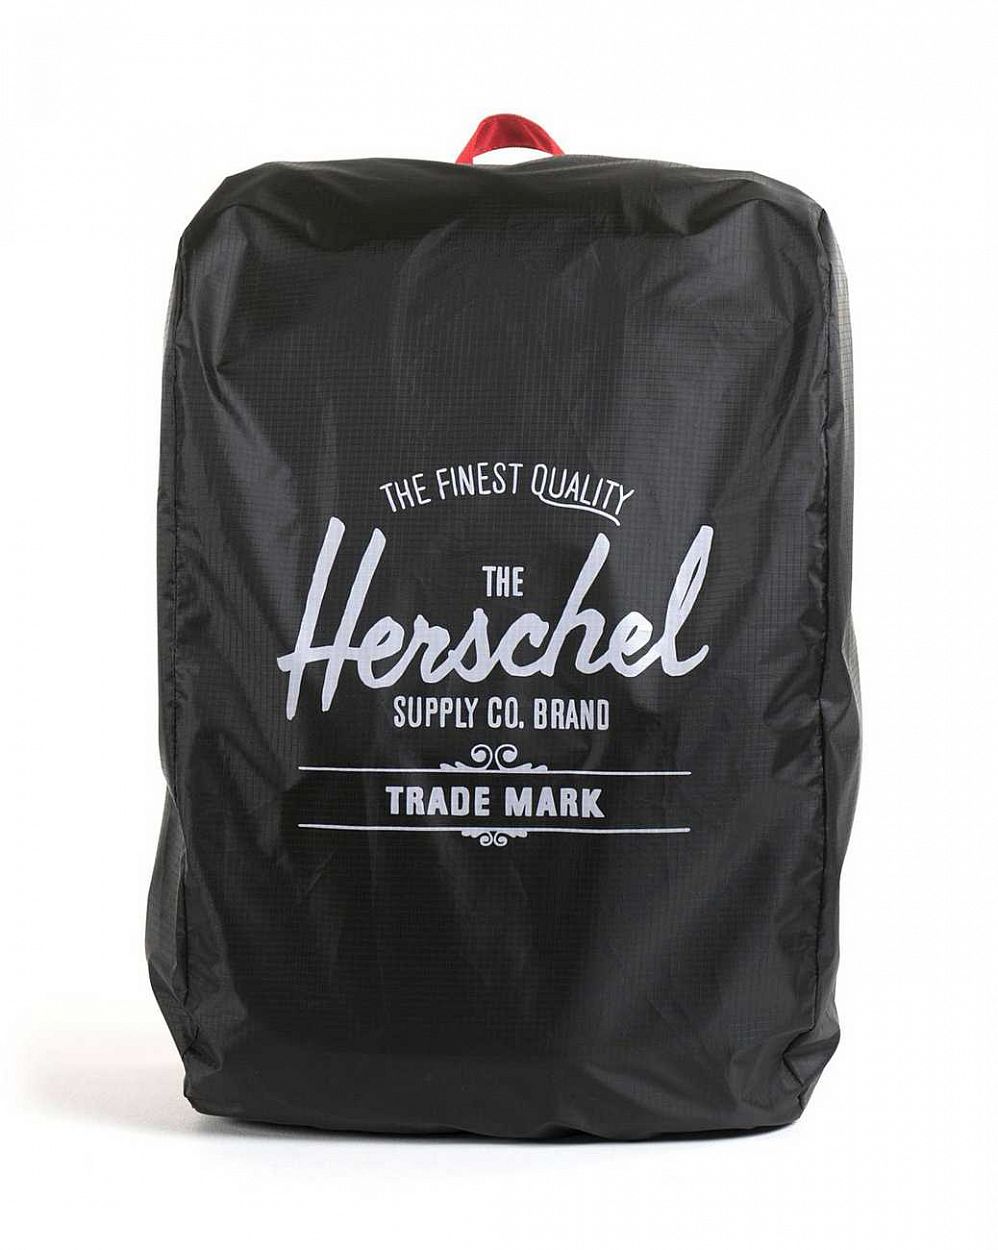 Непромокаемый чехол для рюкзака или сумки Herschel Packable Rain Cover Black отзывы